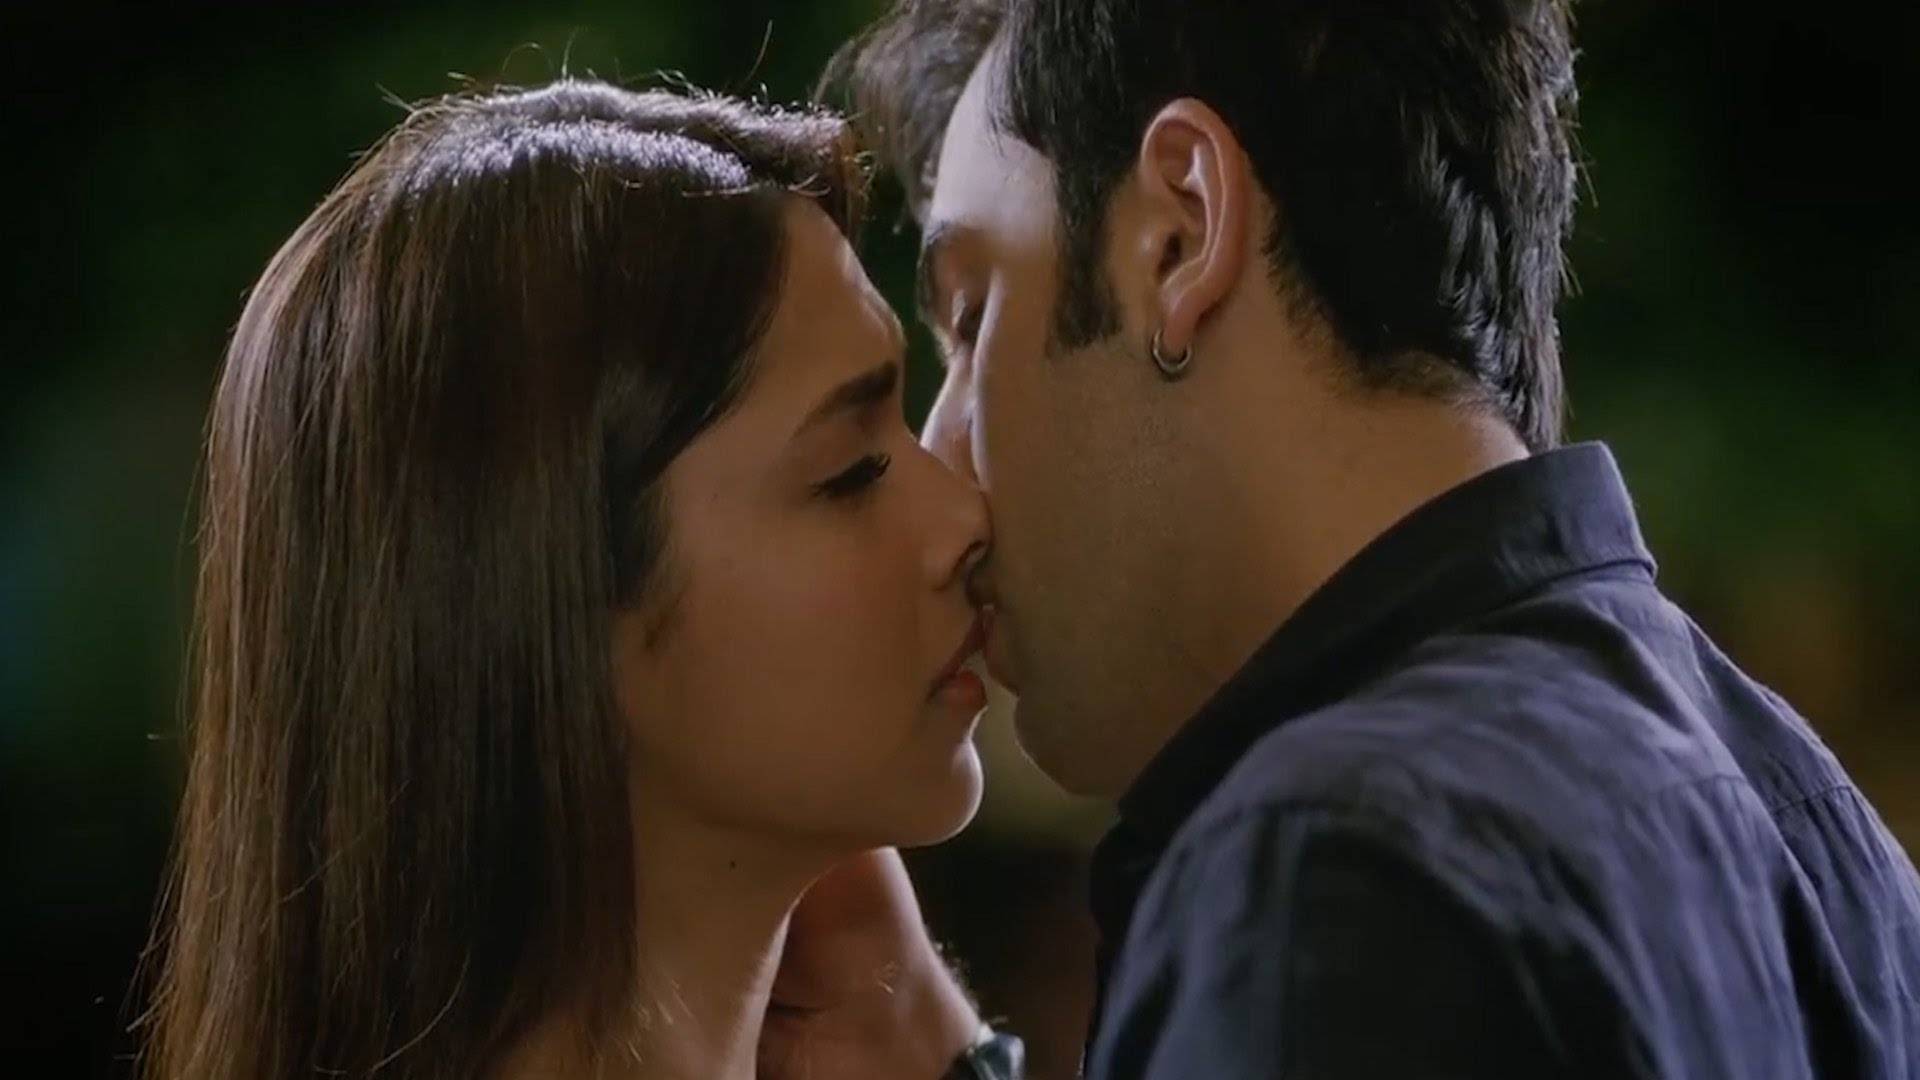 Needfull Kiss Cute Conversation - Ye Jawani Hai Diwani Ranbir Kapoor - HD Wallpaper 